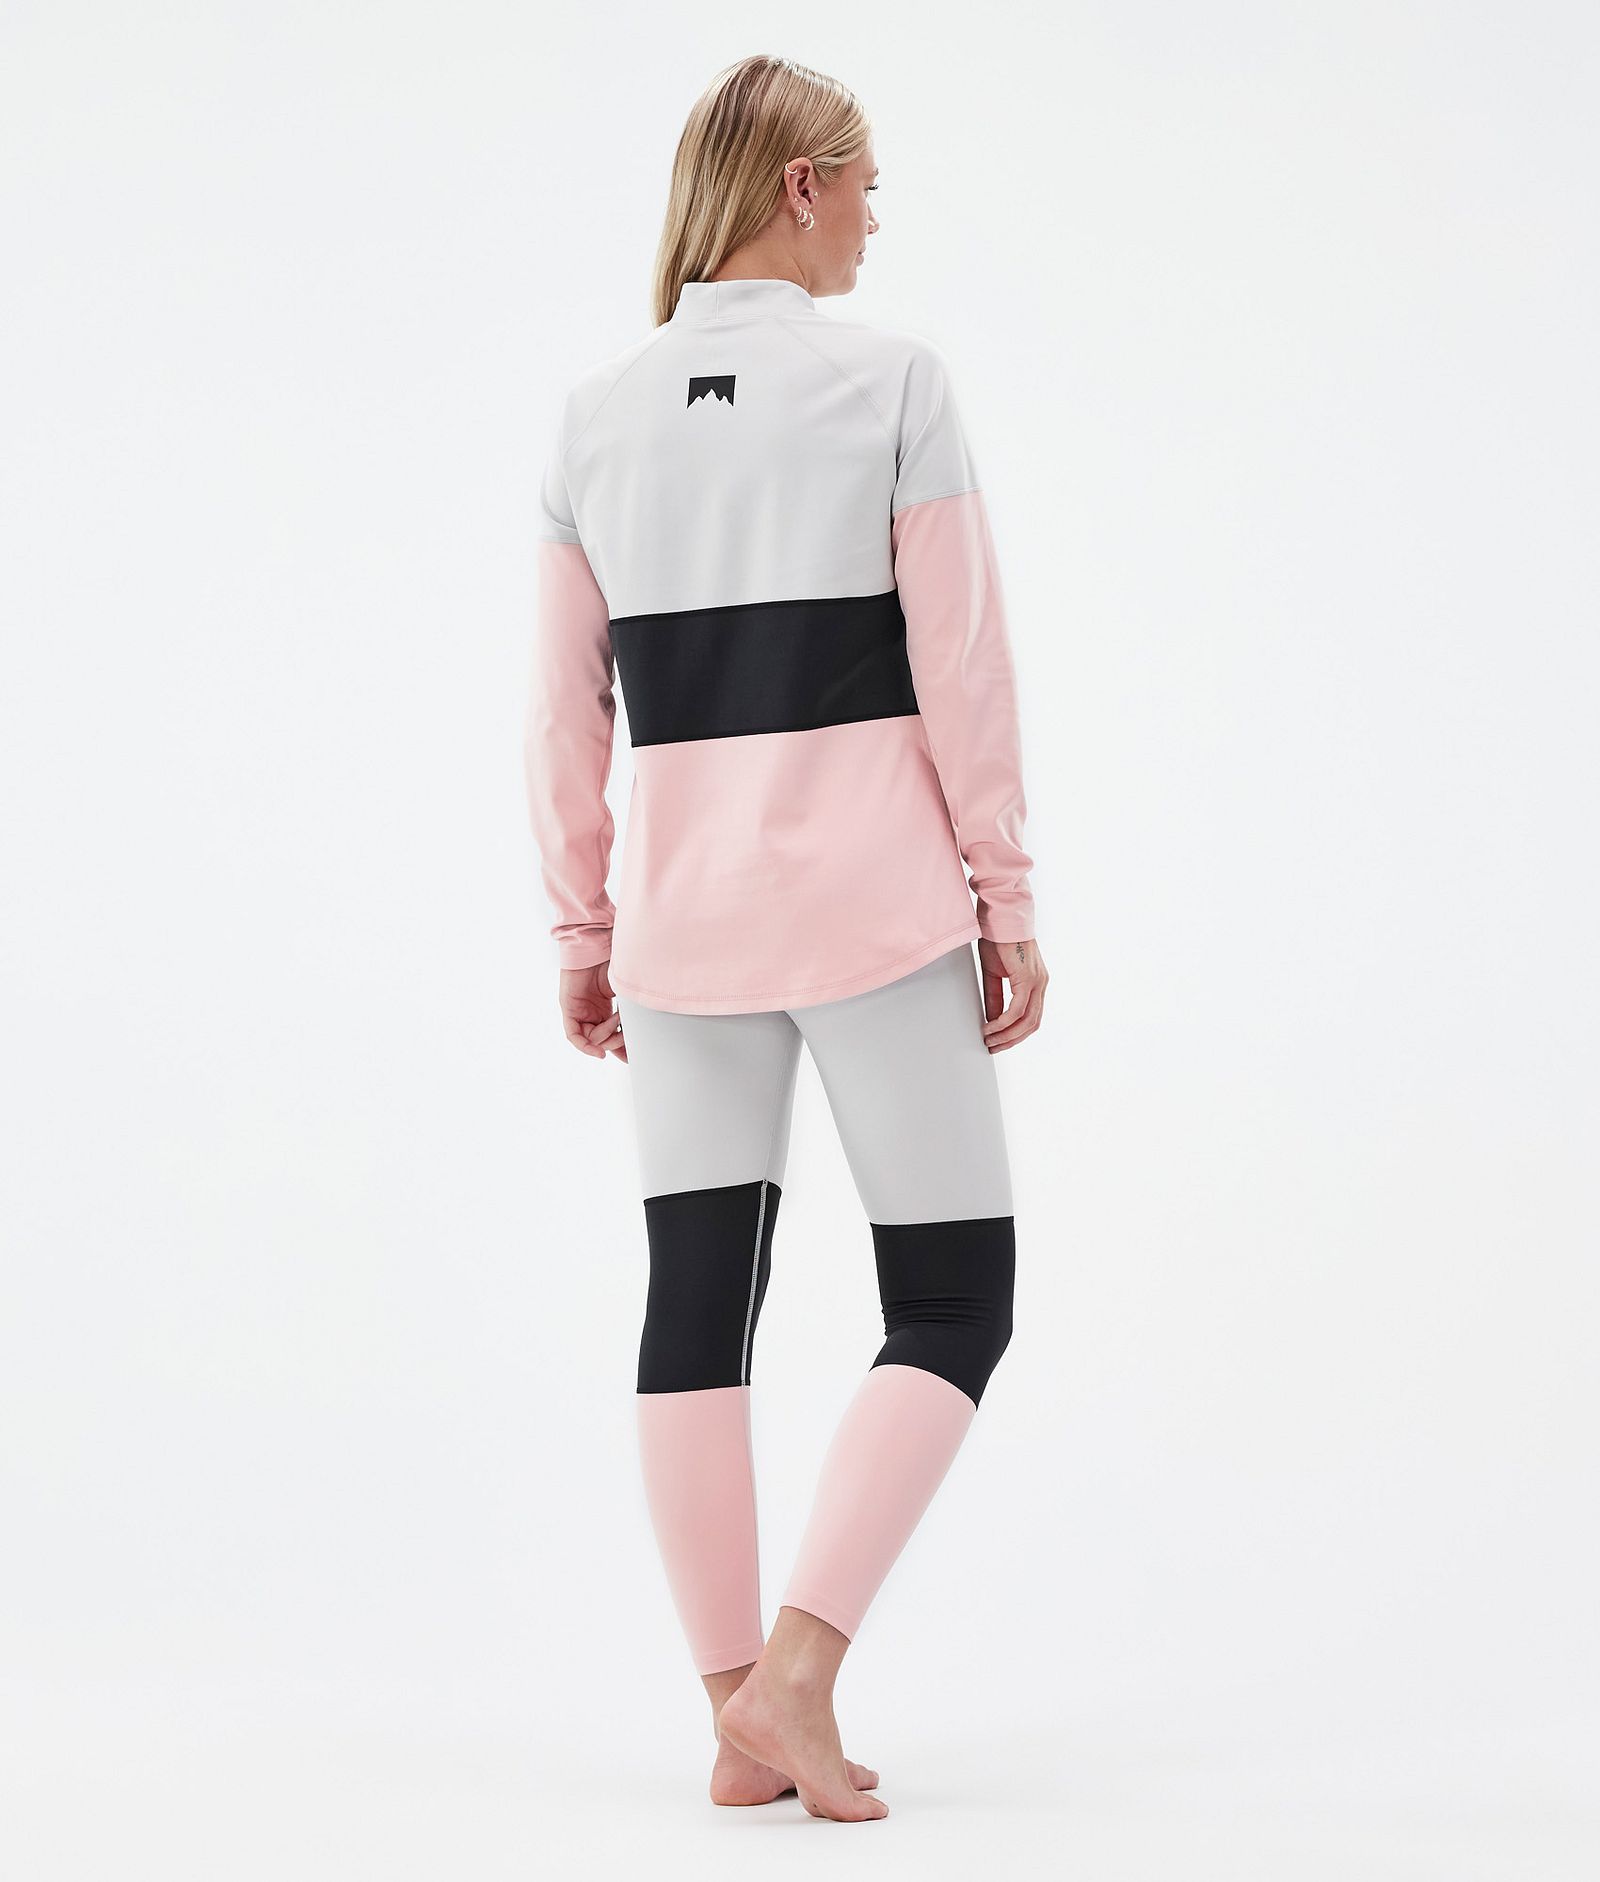 Montec Alpha W Funktionsshirt Damen Light Grey/Black/Soft Pink, Bild 4 von 5